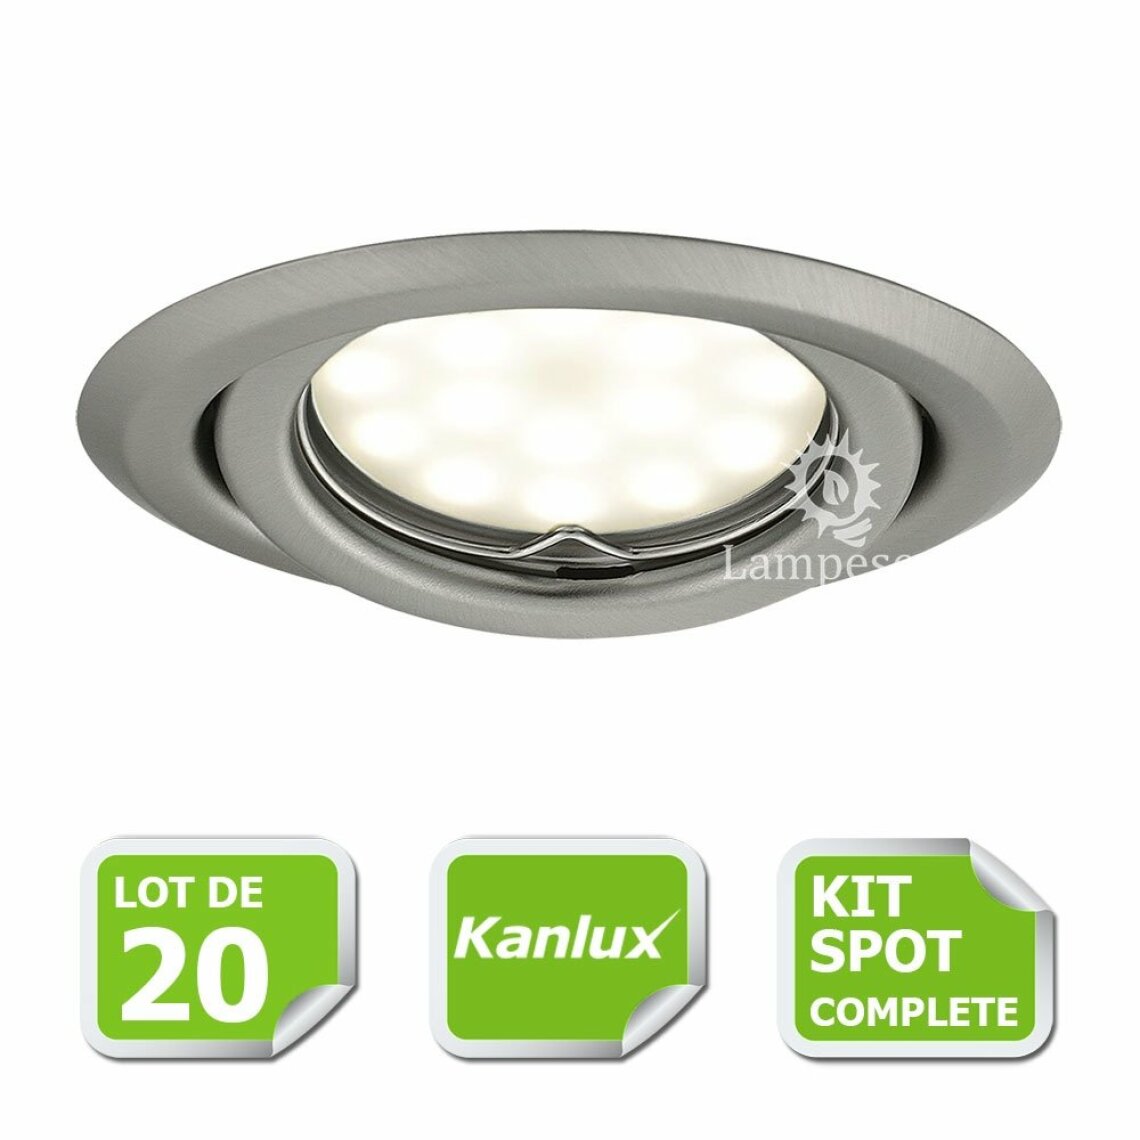 Kanlux - Kit complete de 20 Spots encastrable chrome mat orientable marque Kanlux avec GU10 LED 5W 3000K blanc chaud - Boîtes d'encastrement